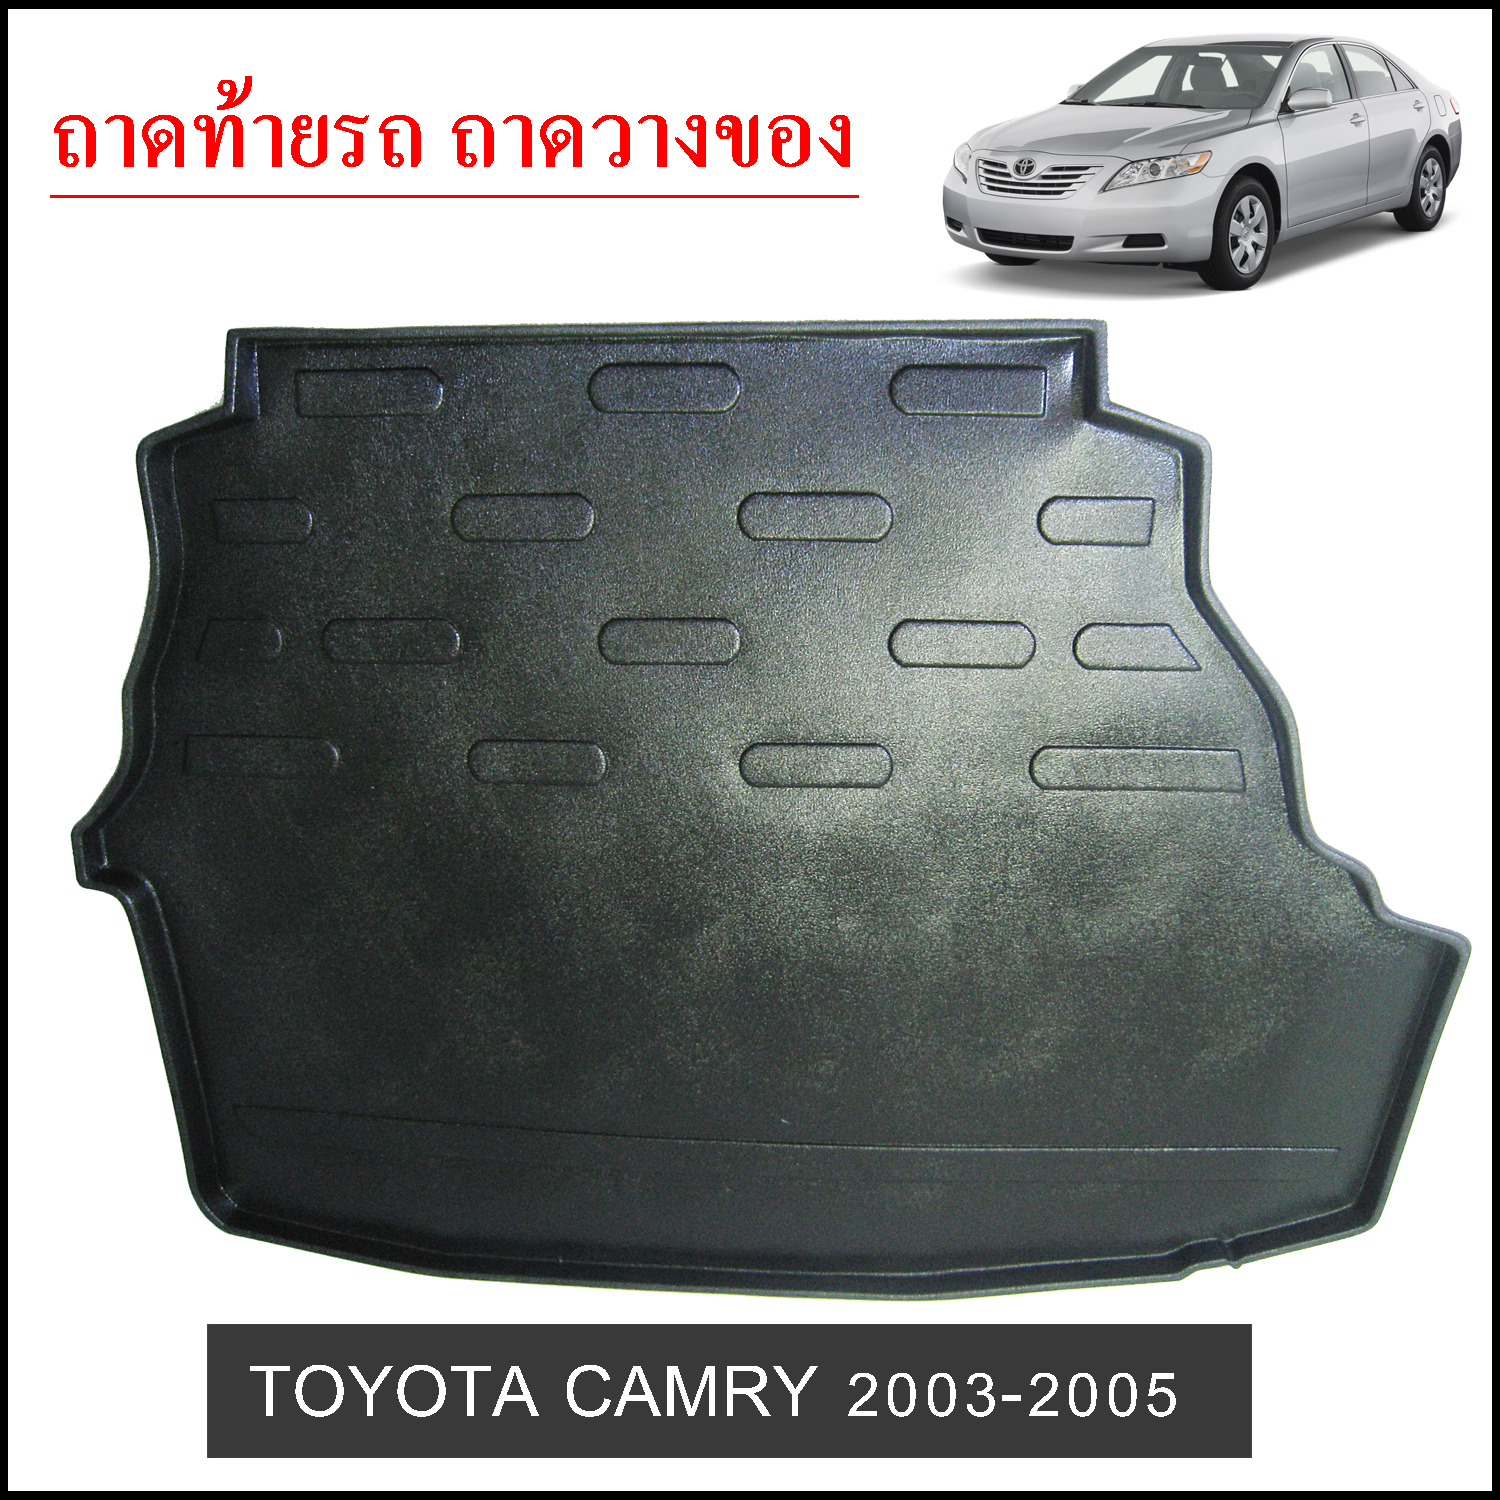 ถาดท้ายวางของ Toyota Camry 2003-2005